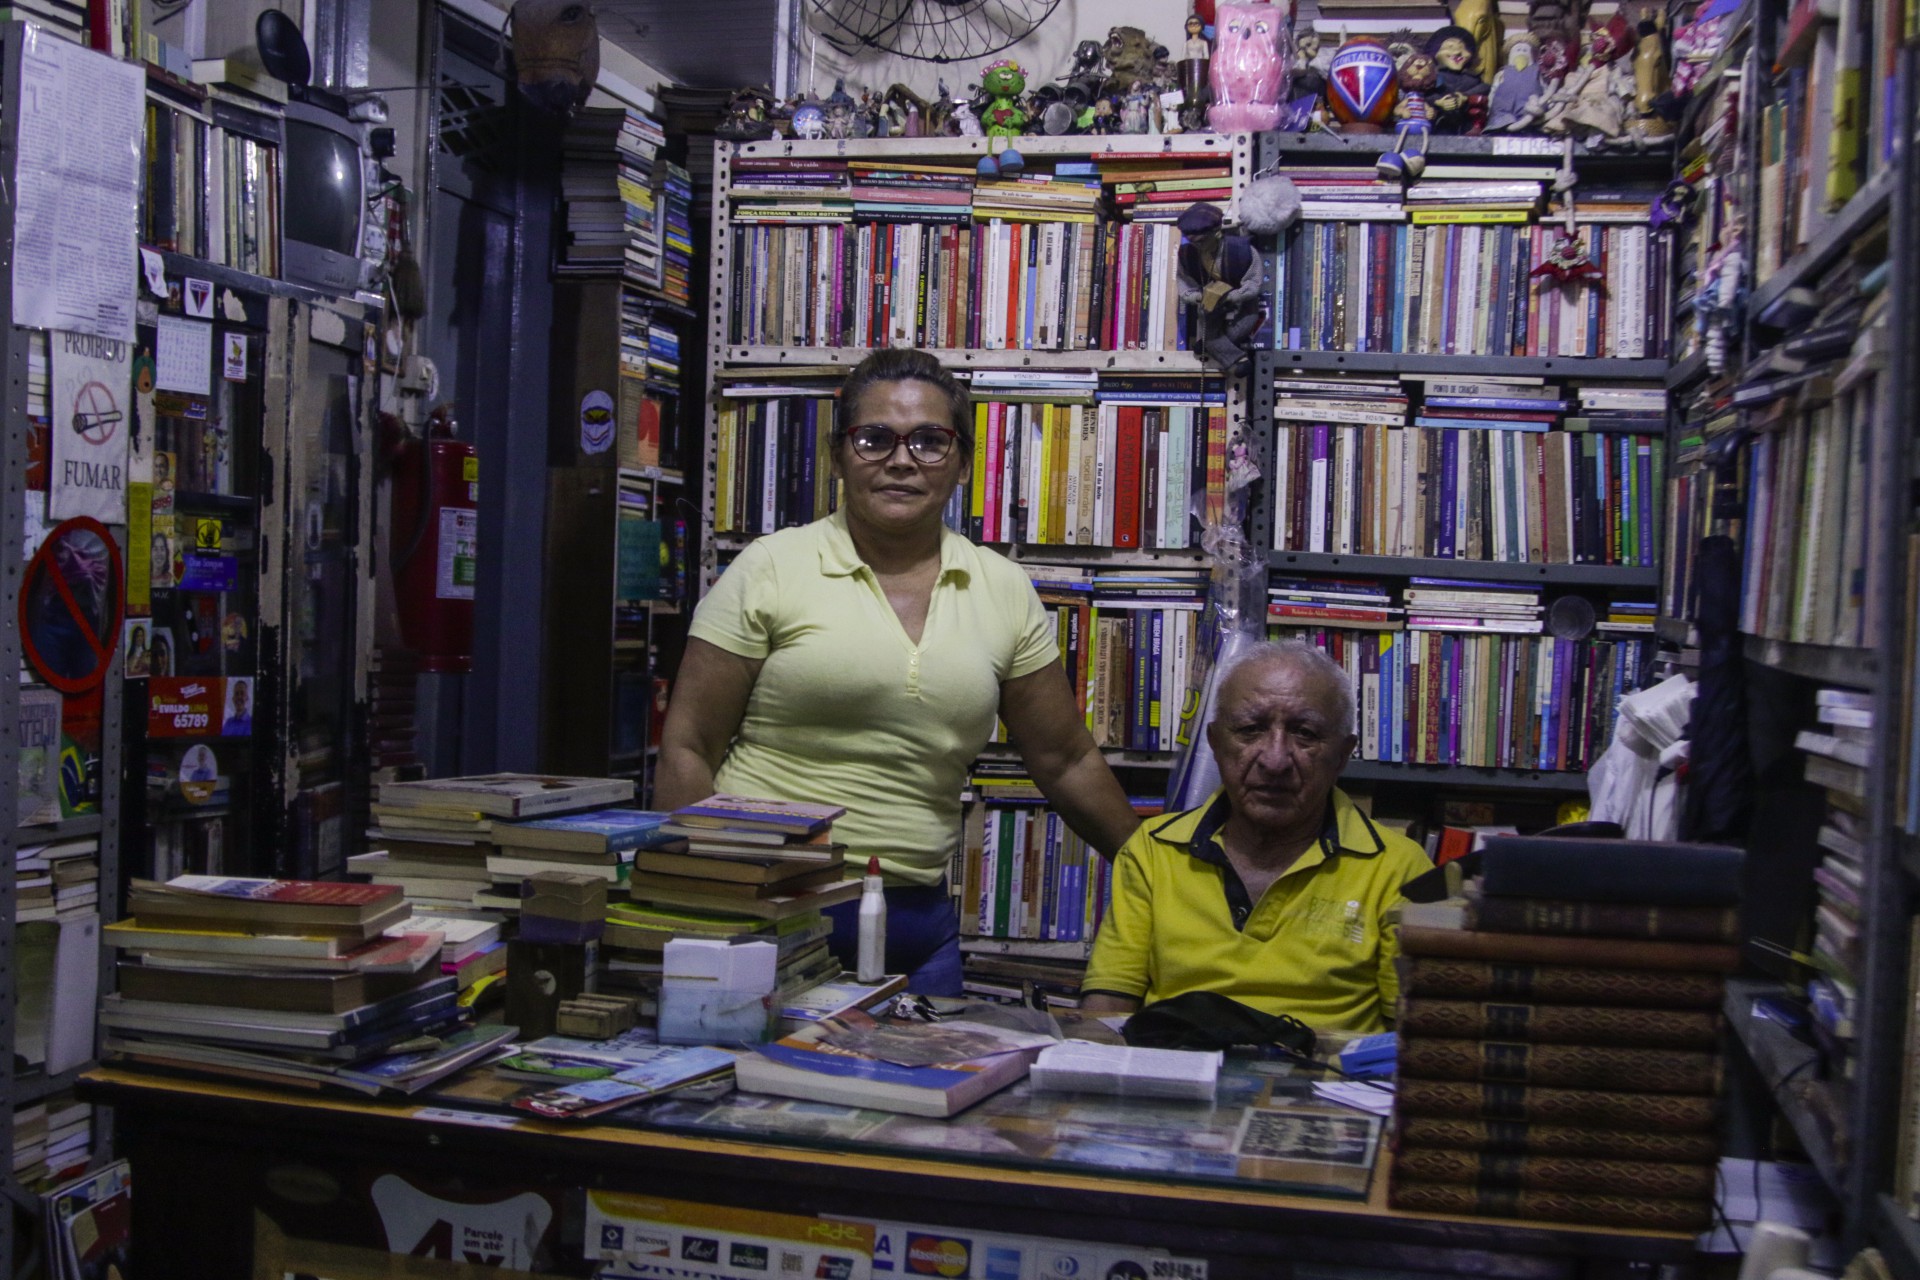 Dona Estela e Seu Geraldo estimam que tenham mais de 200 mil obras no local (Foto: Thais Mesquita)